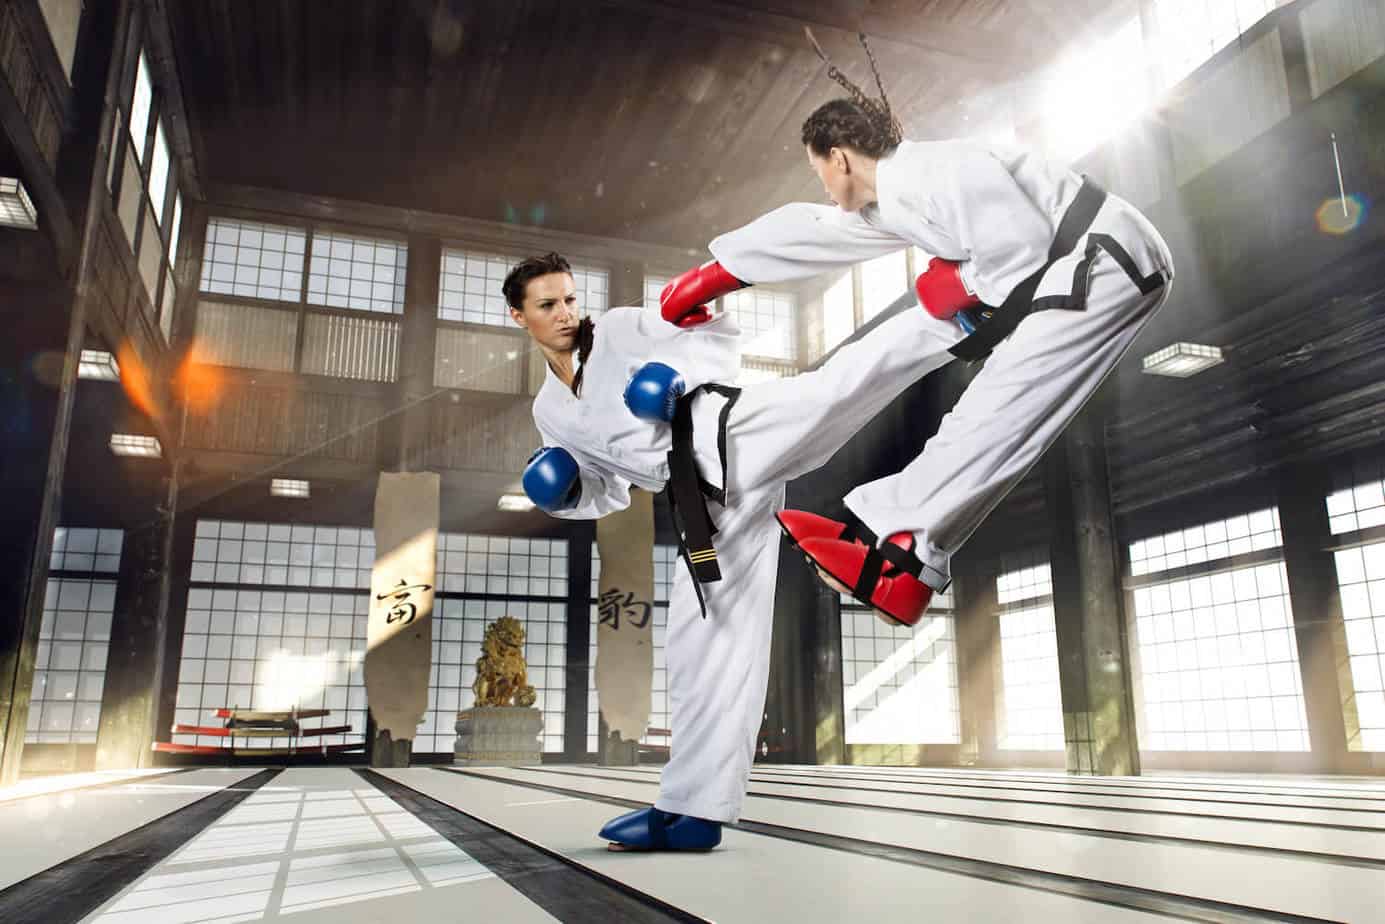 karate combat martial arts